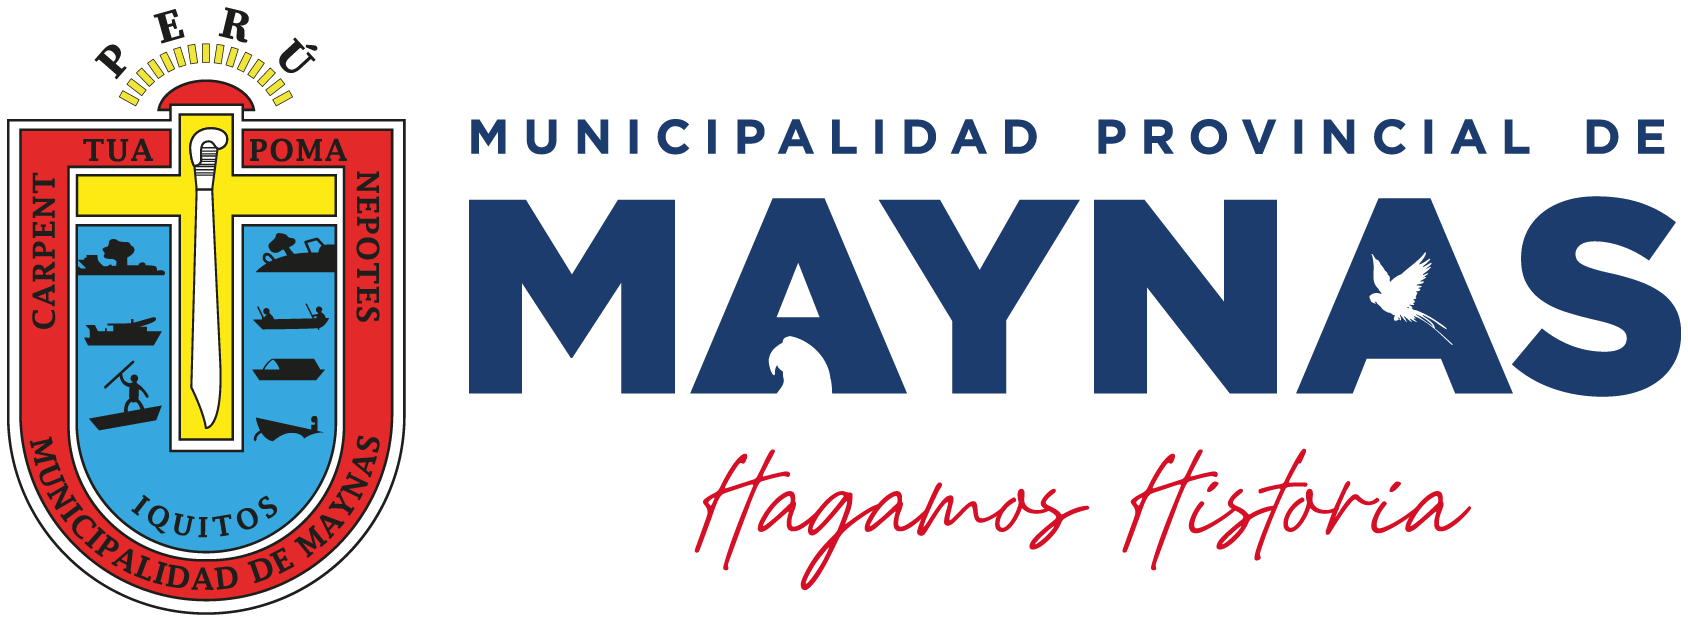 Municipalidad Provincial de Maynas